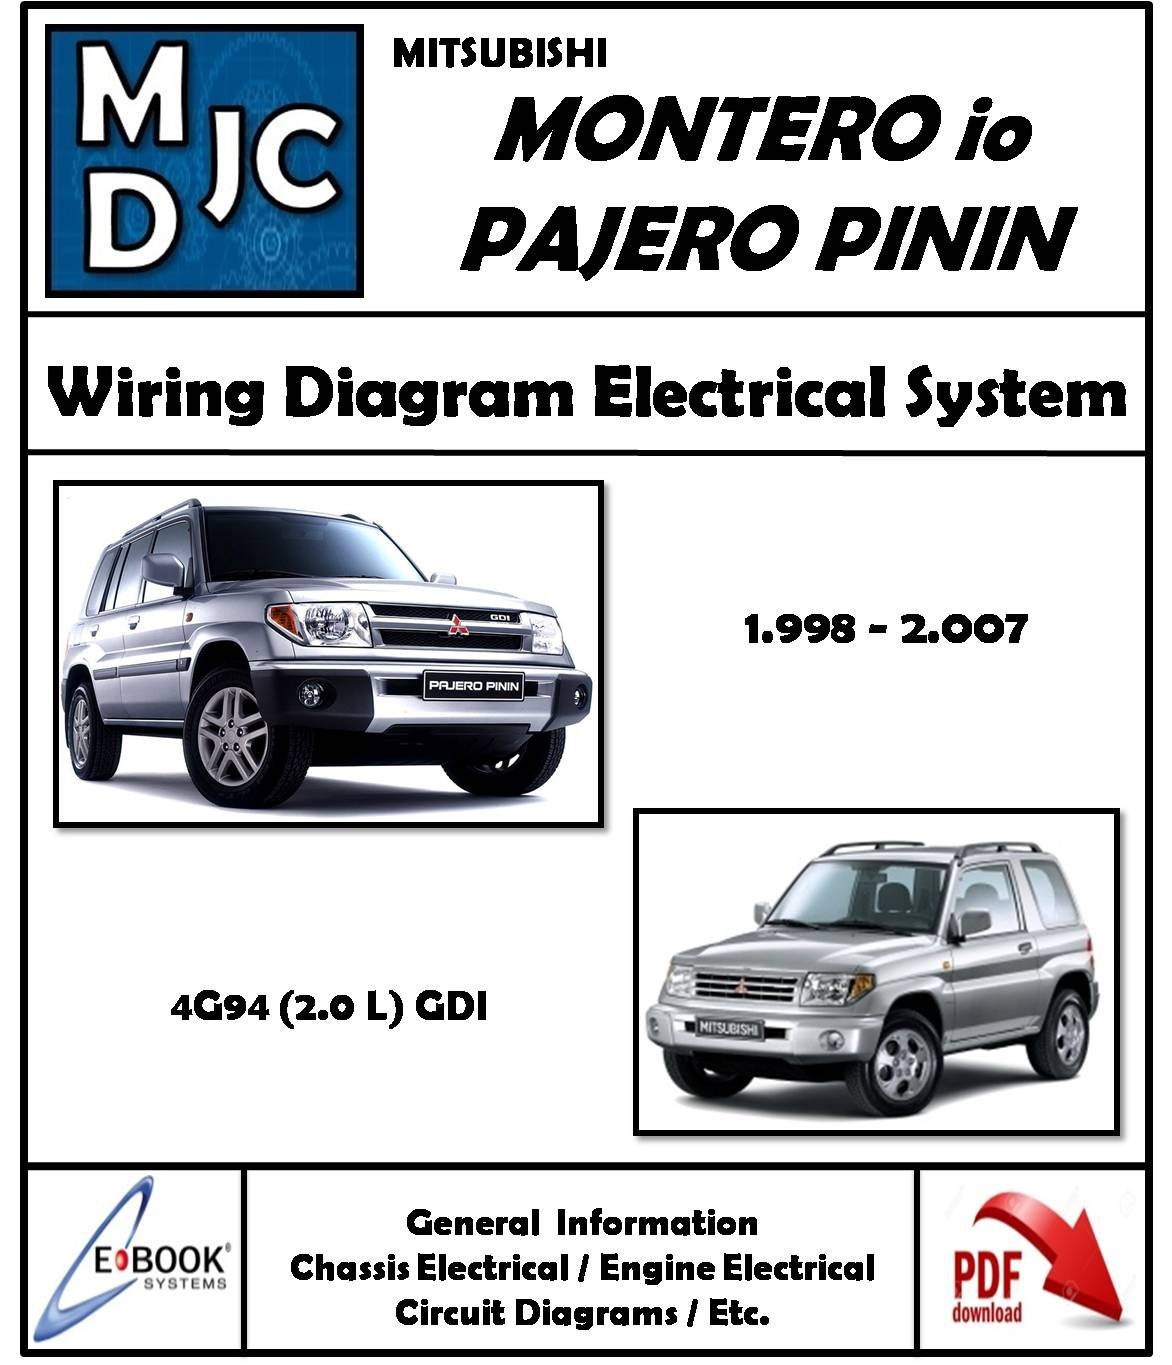 Diagramas Sistema Eléctrico Mitsubishi Montero io / Pajero Pinin ( 4G94 ) (2.0 L) 1998 - 2007